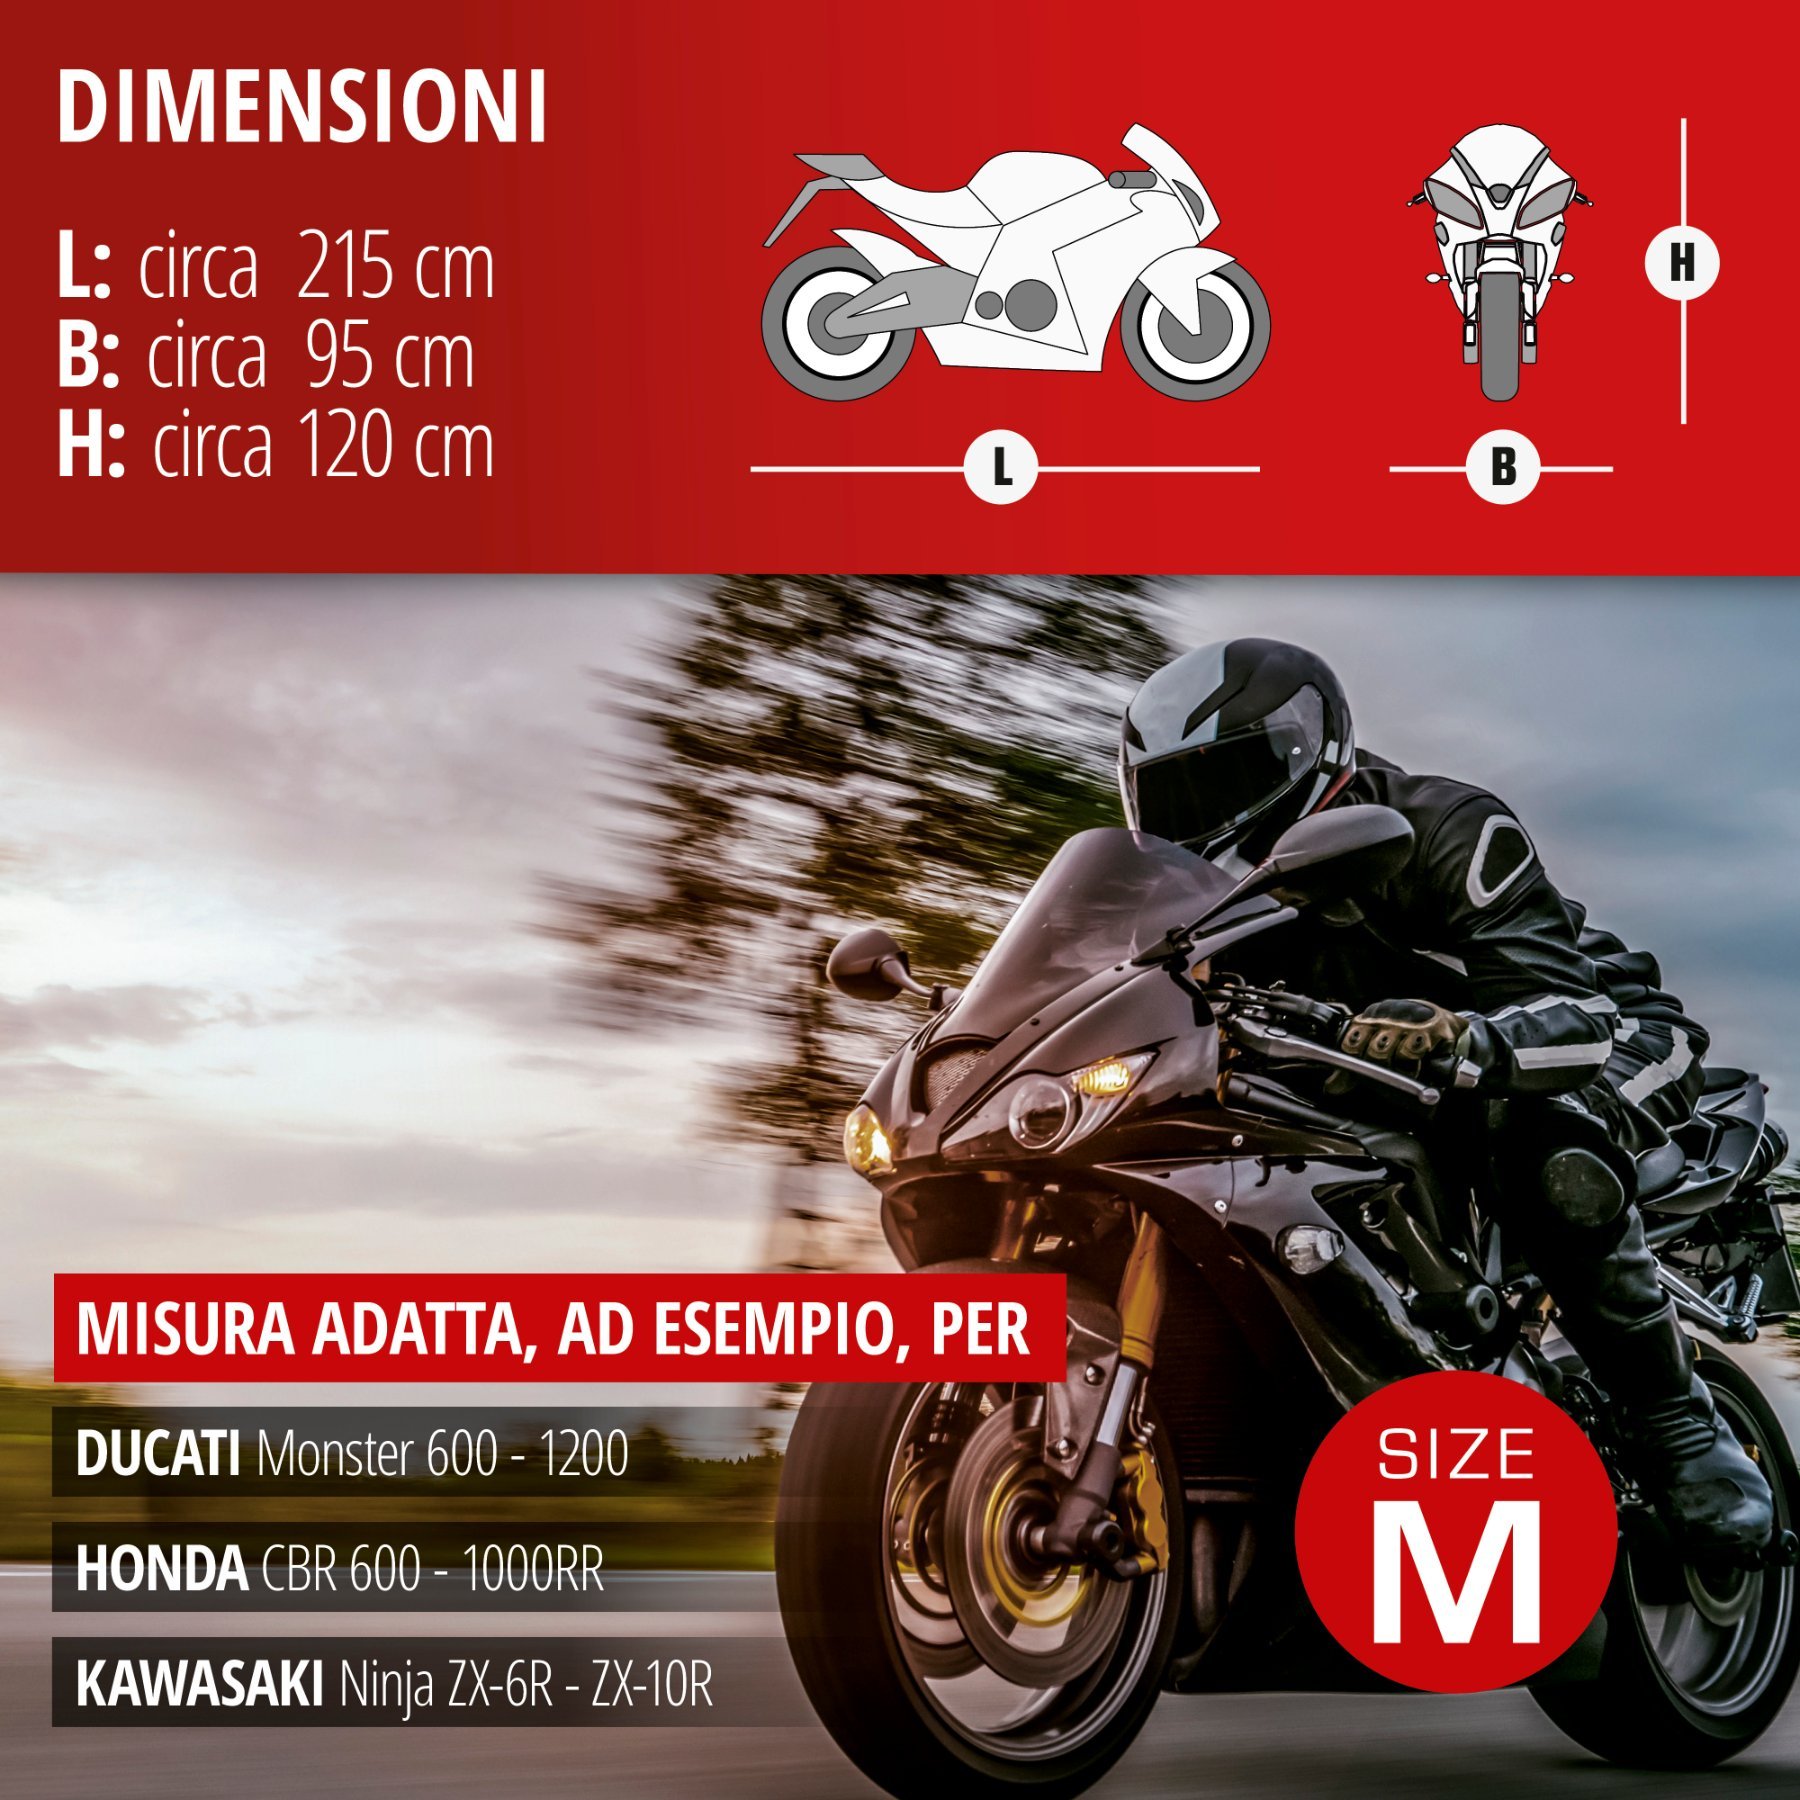 Garage per motociclette Dimensioni sportive M PVC - 215 x 95 x 120 cm grigio